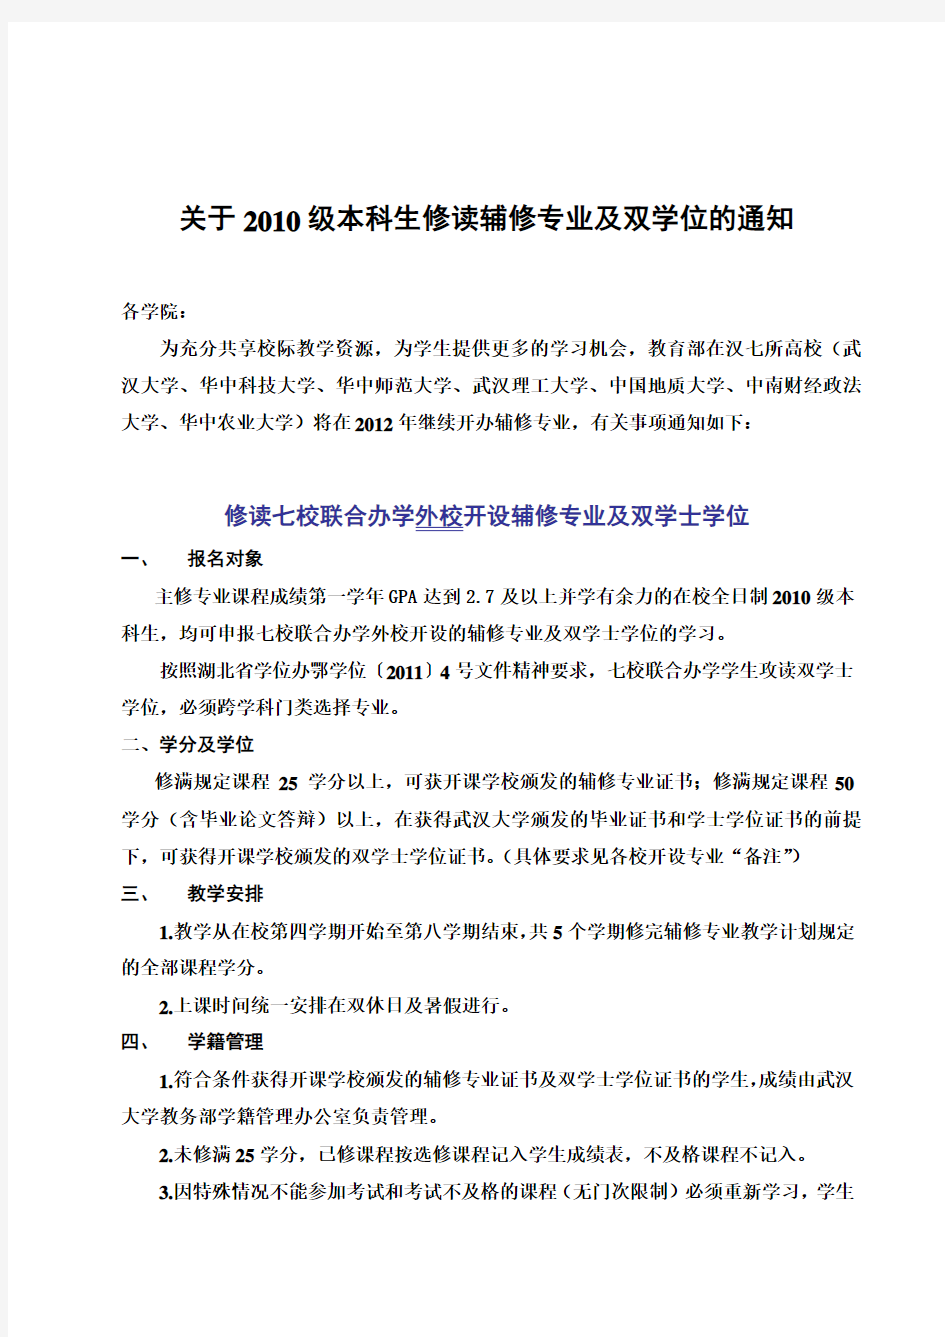 武汉大学七校联合2011年双学位报考具体规定和条例